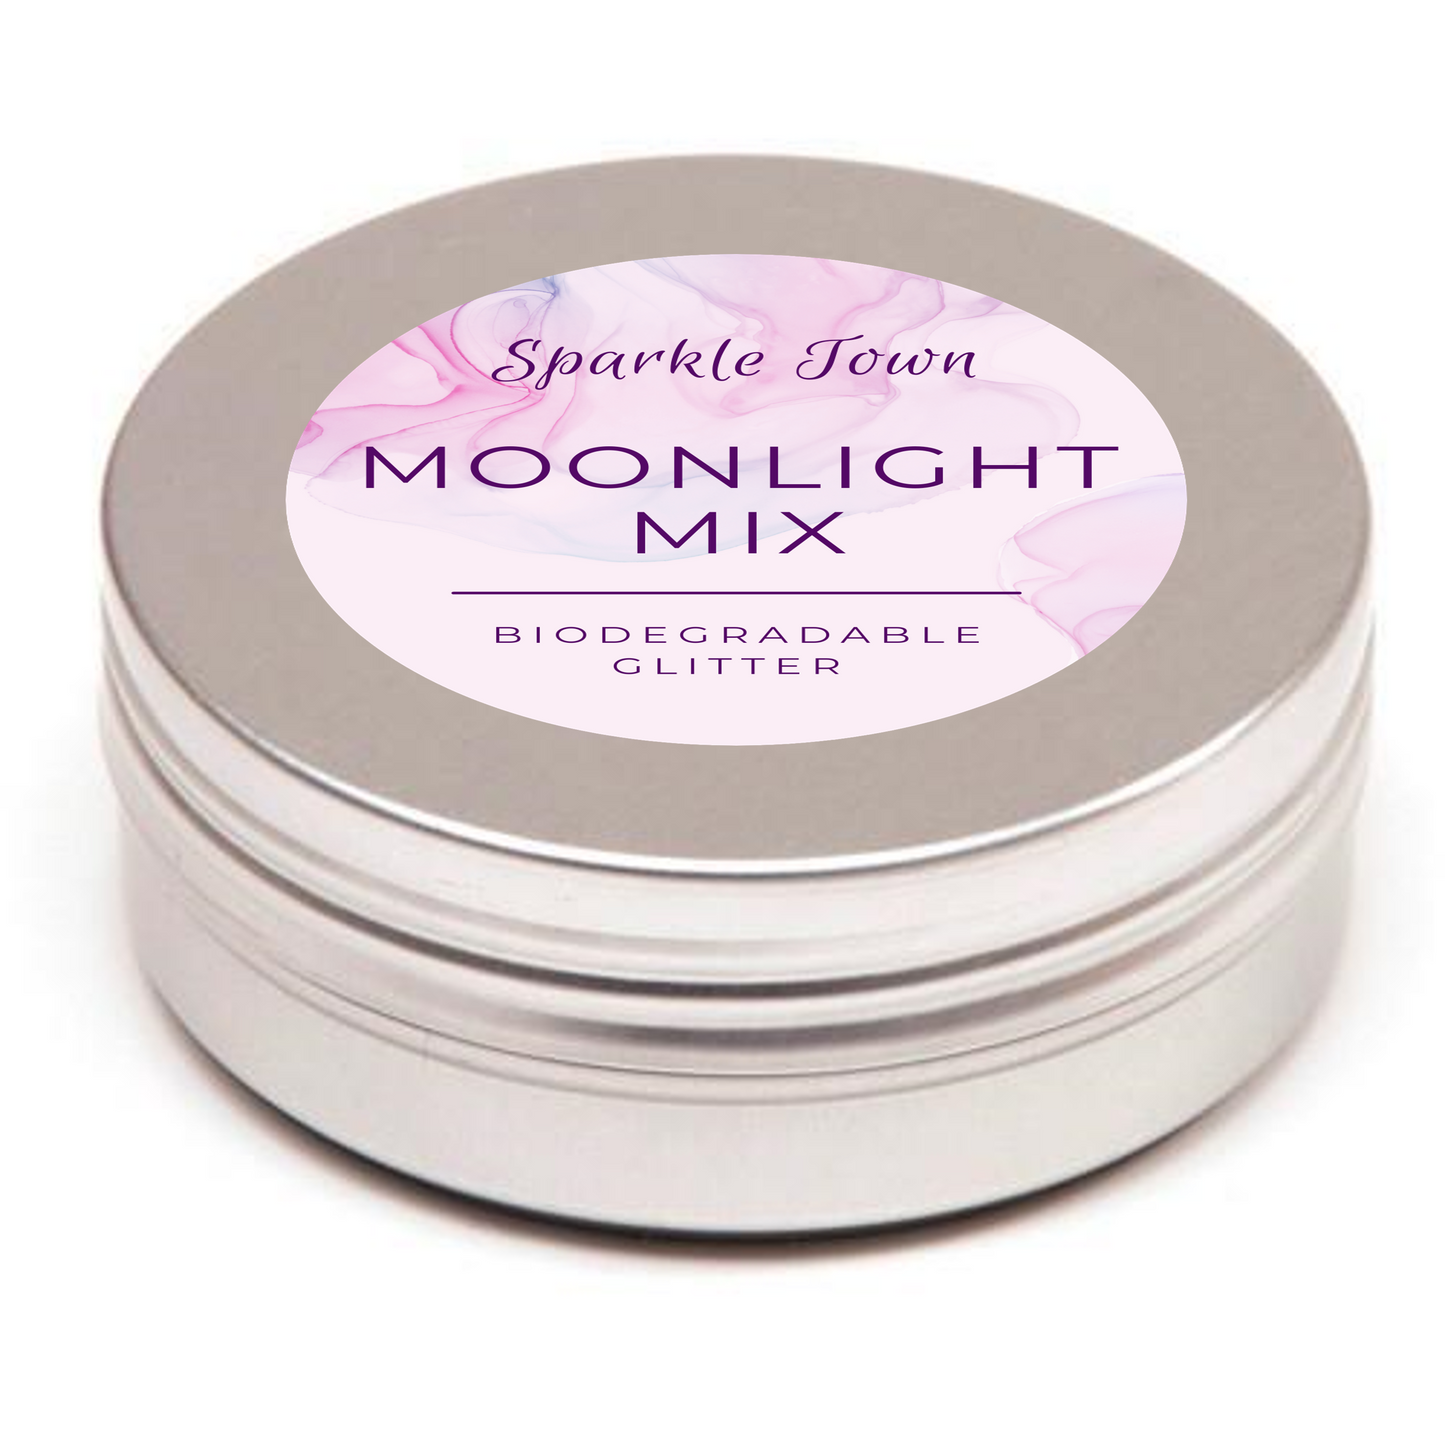 Moonlight Mix Biodegradable Glitter